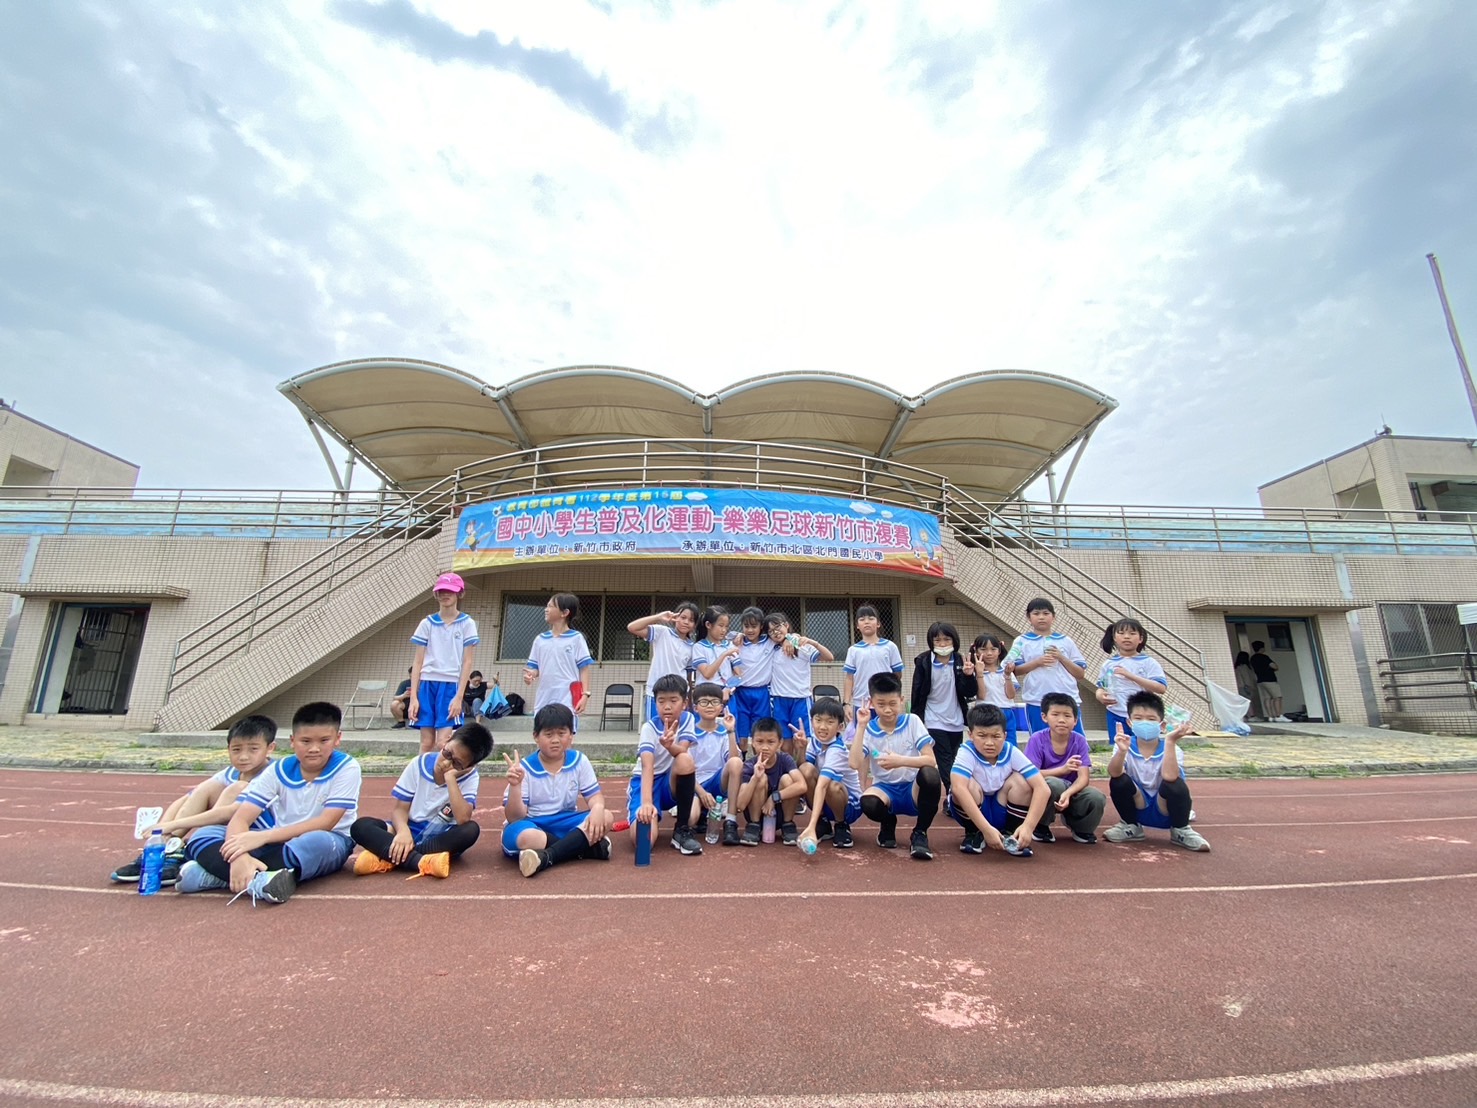 參加112學年新竹市國中小普及化運動樂樂足球比賽活動照片